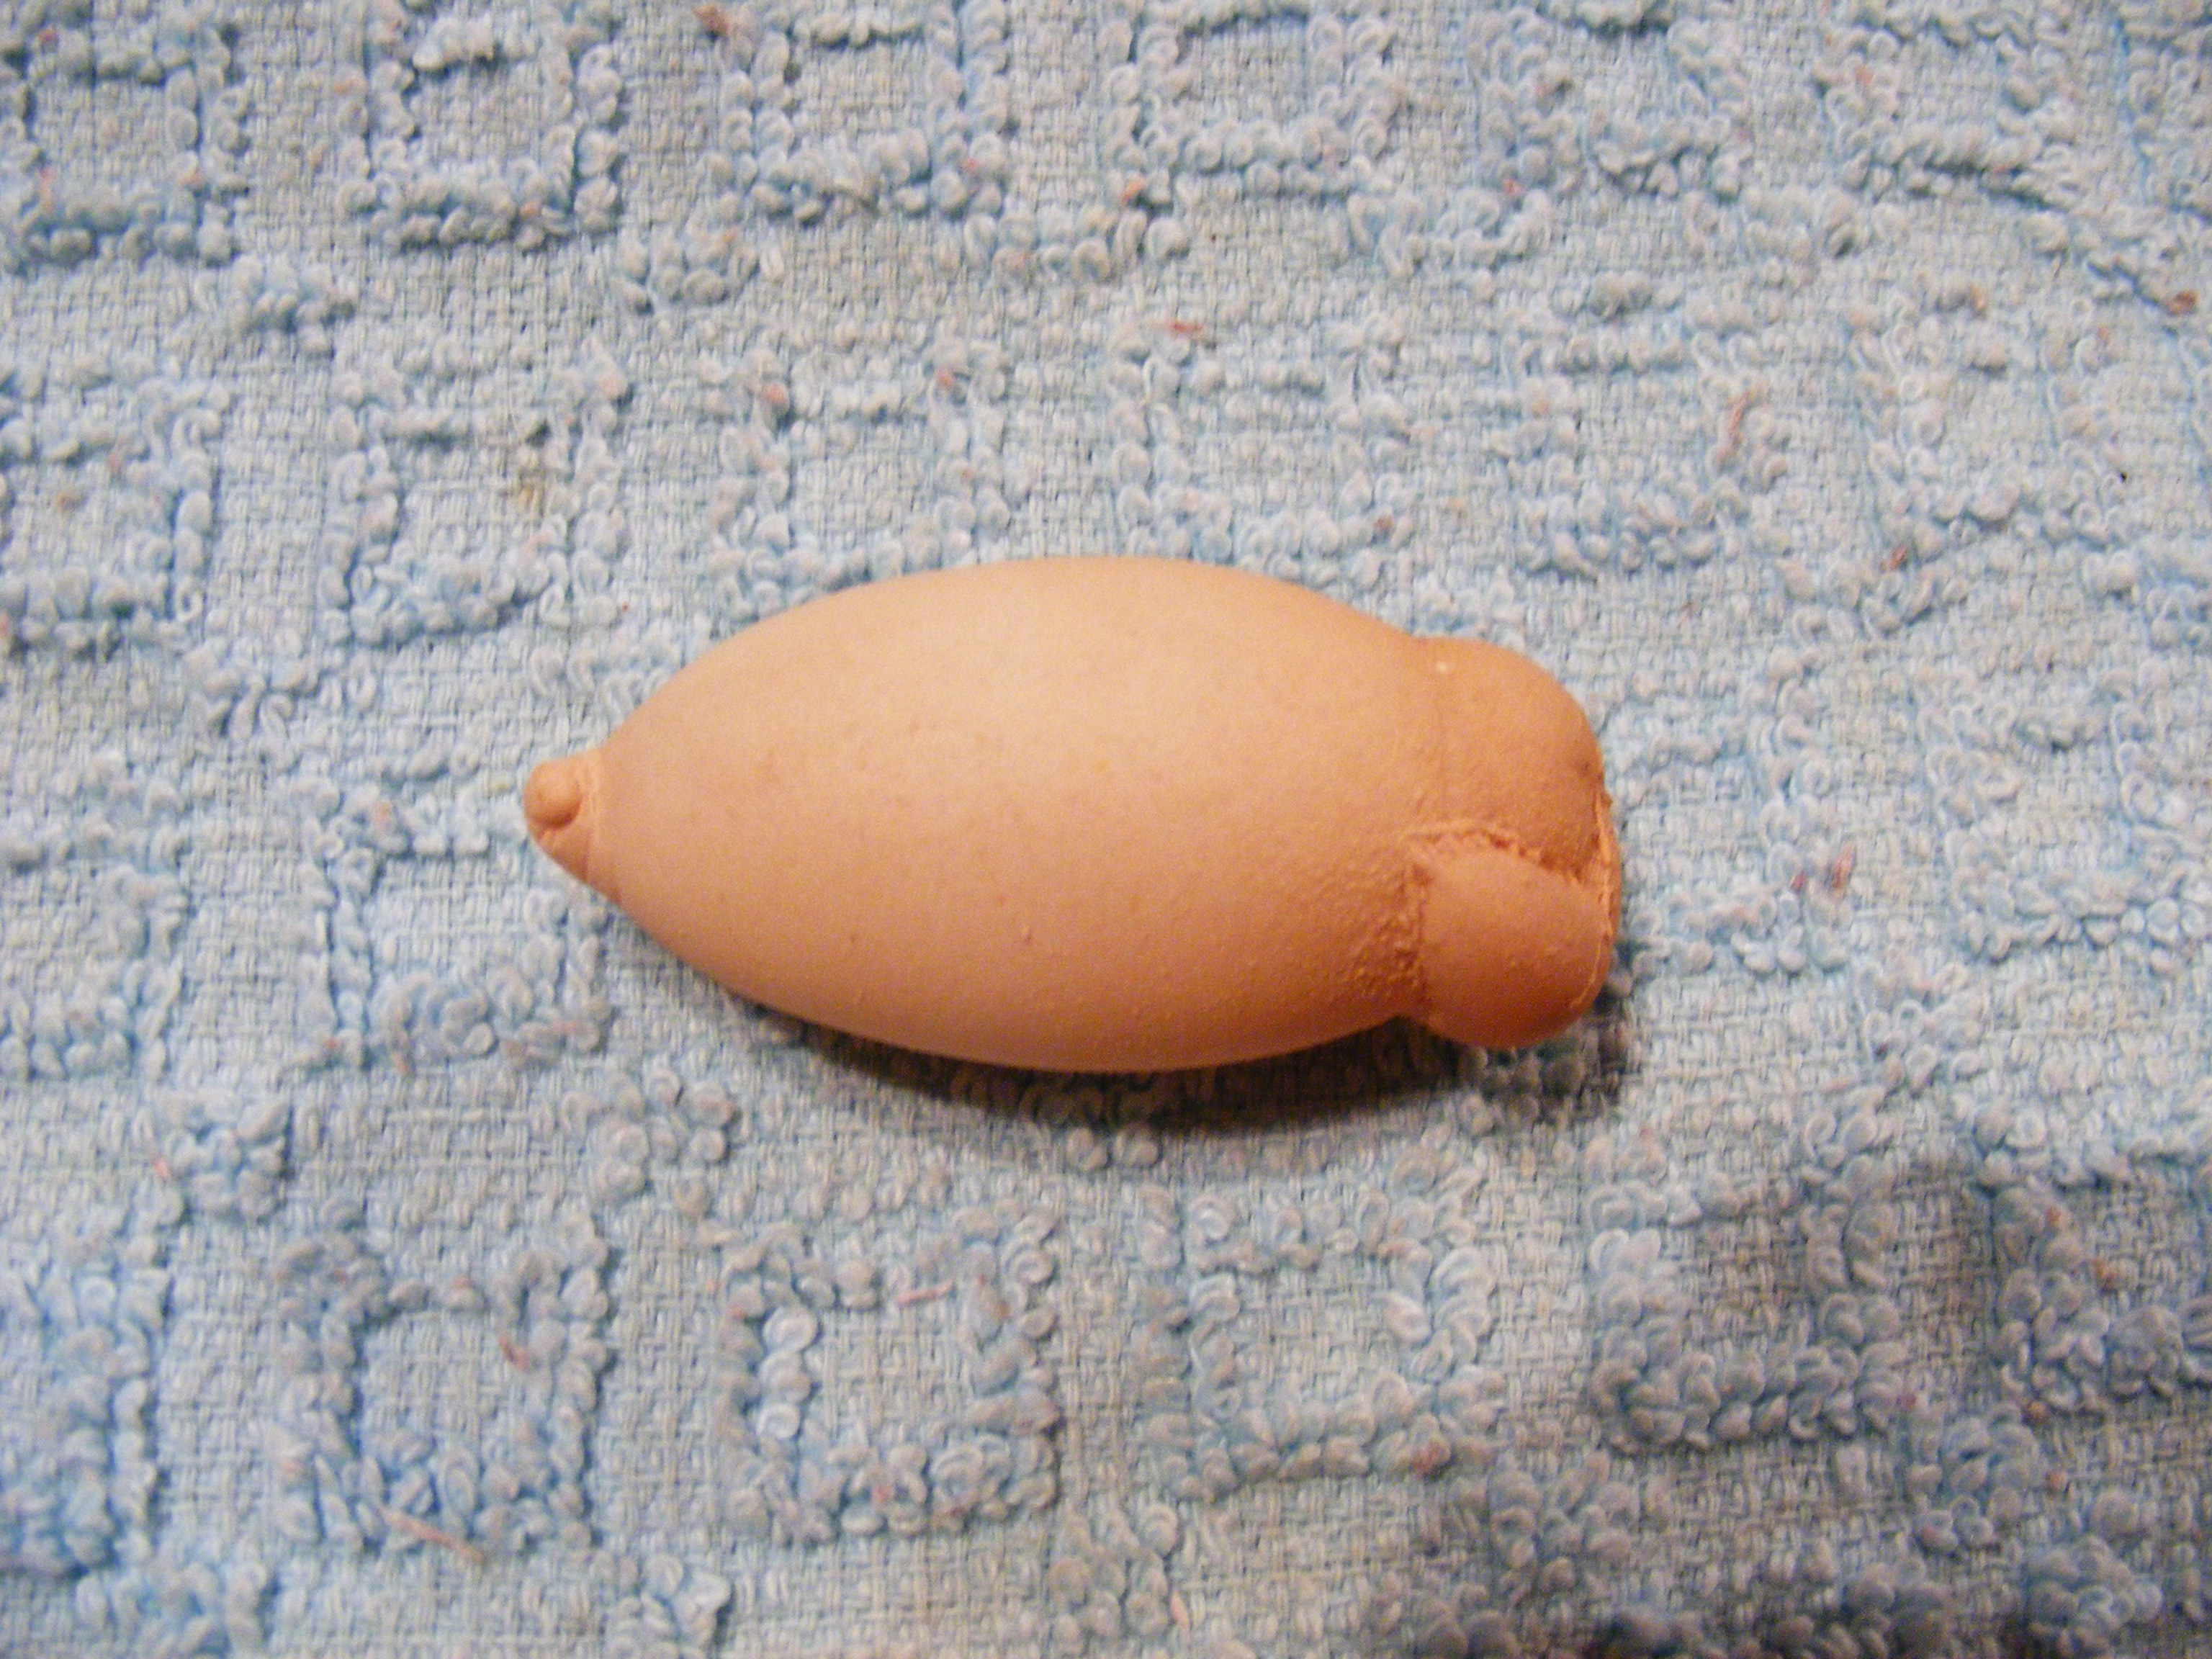 odd egg!